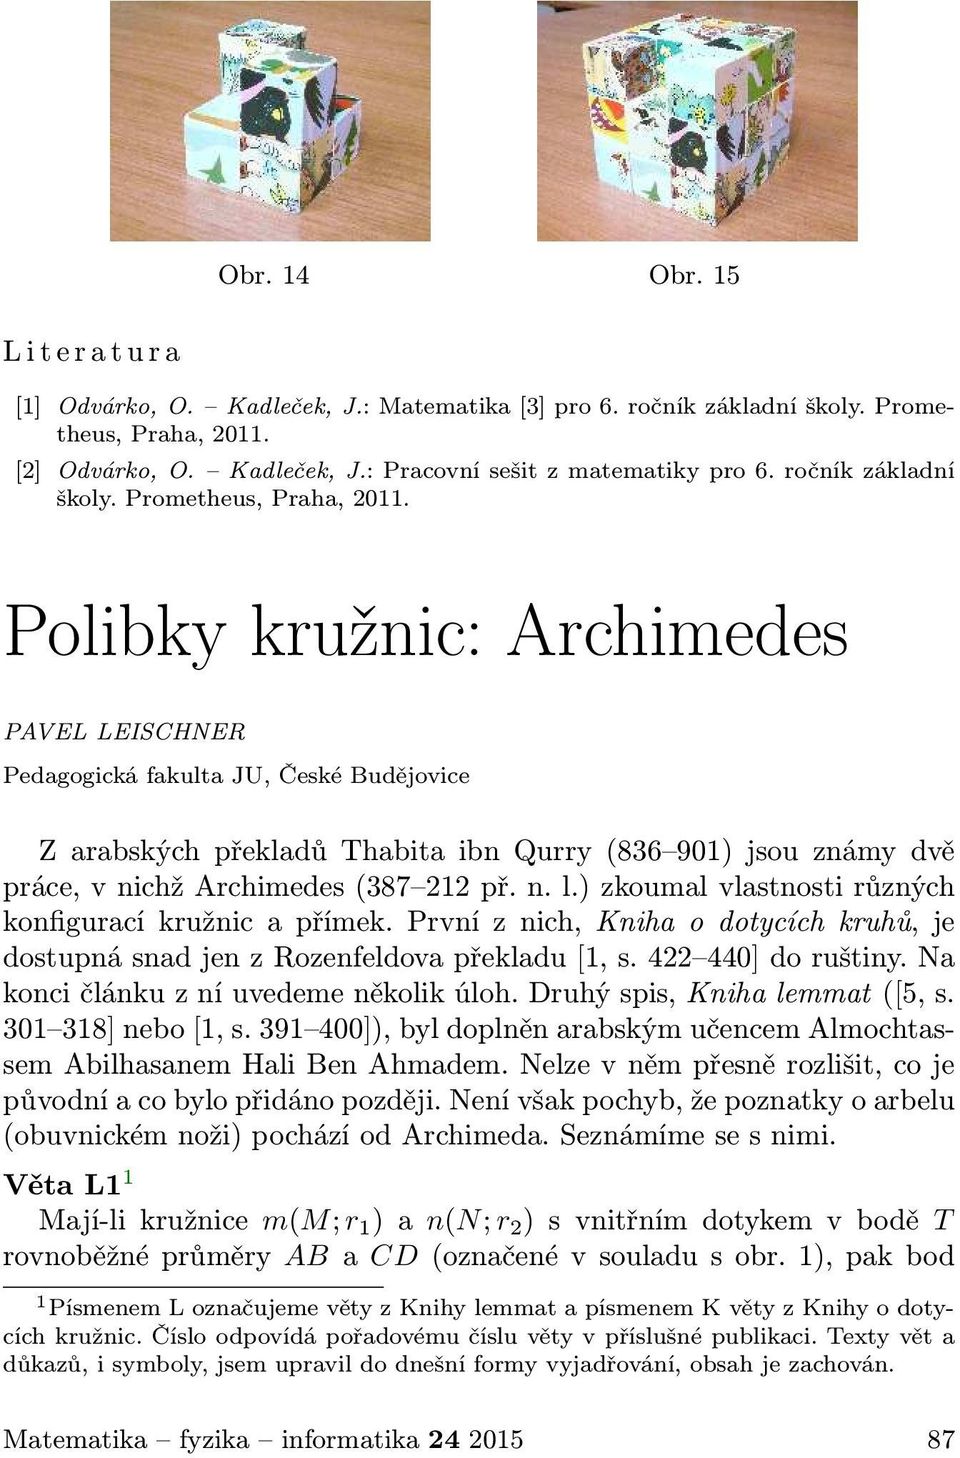 Polibky kružnic: Archimedes PAVEL LEISCHNER Pedagogická fakulta JU, České Budějovice Z arabských překladů Thabita ibn Qurry(836 901) jsou známy dvě práce, v nichž Archimedes(387 212 př. n. l.